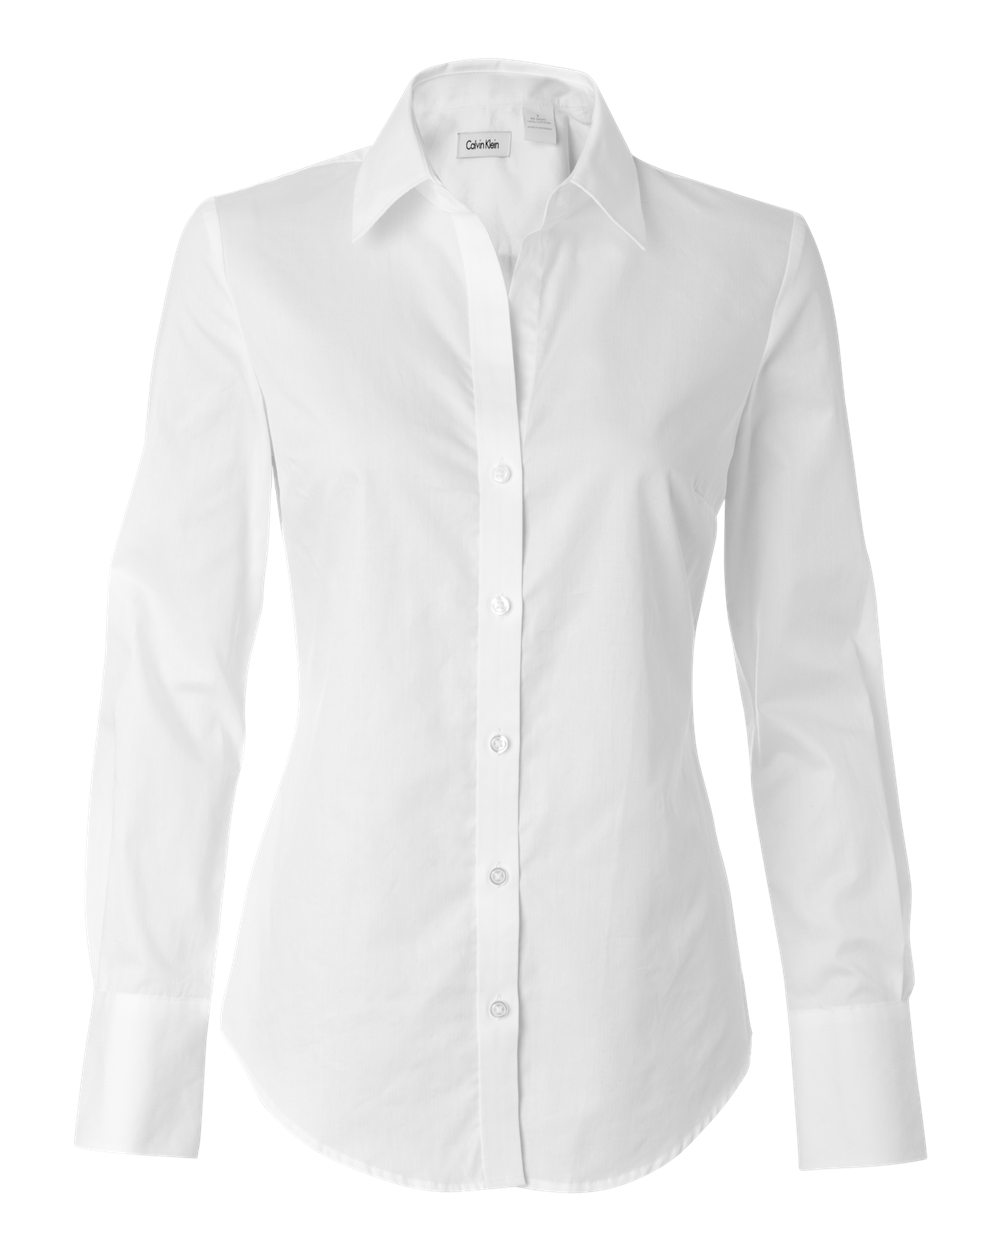 calvin klein white dress shirt womens